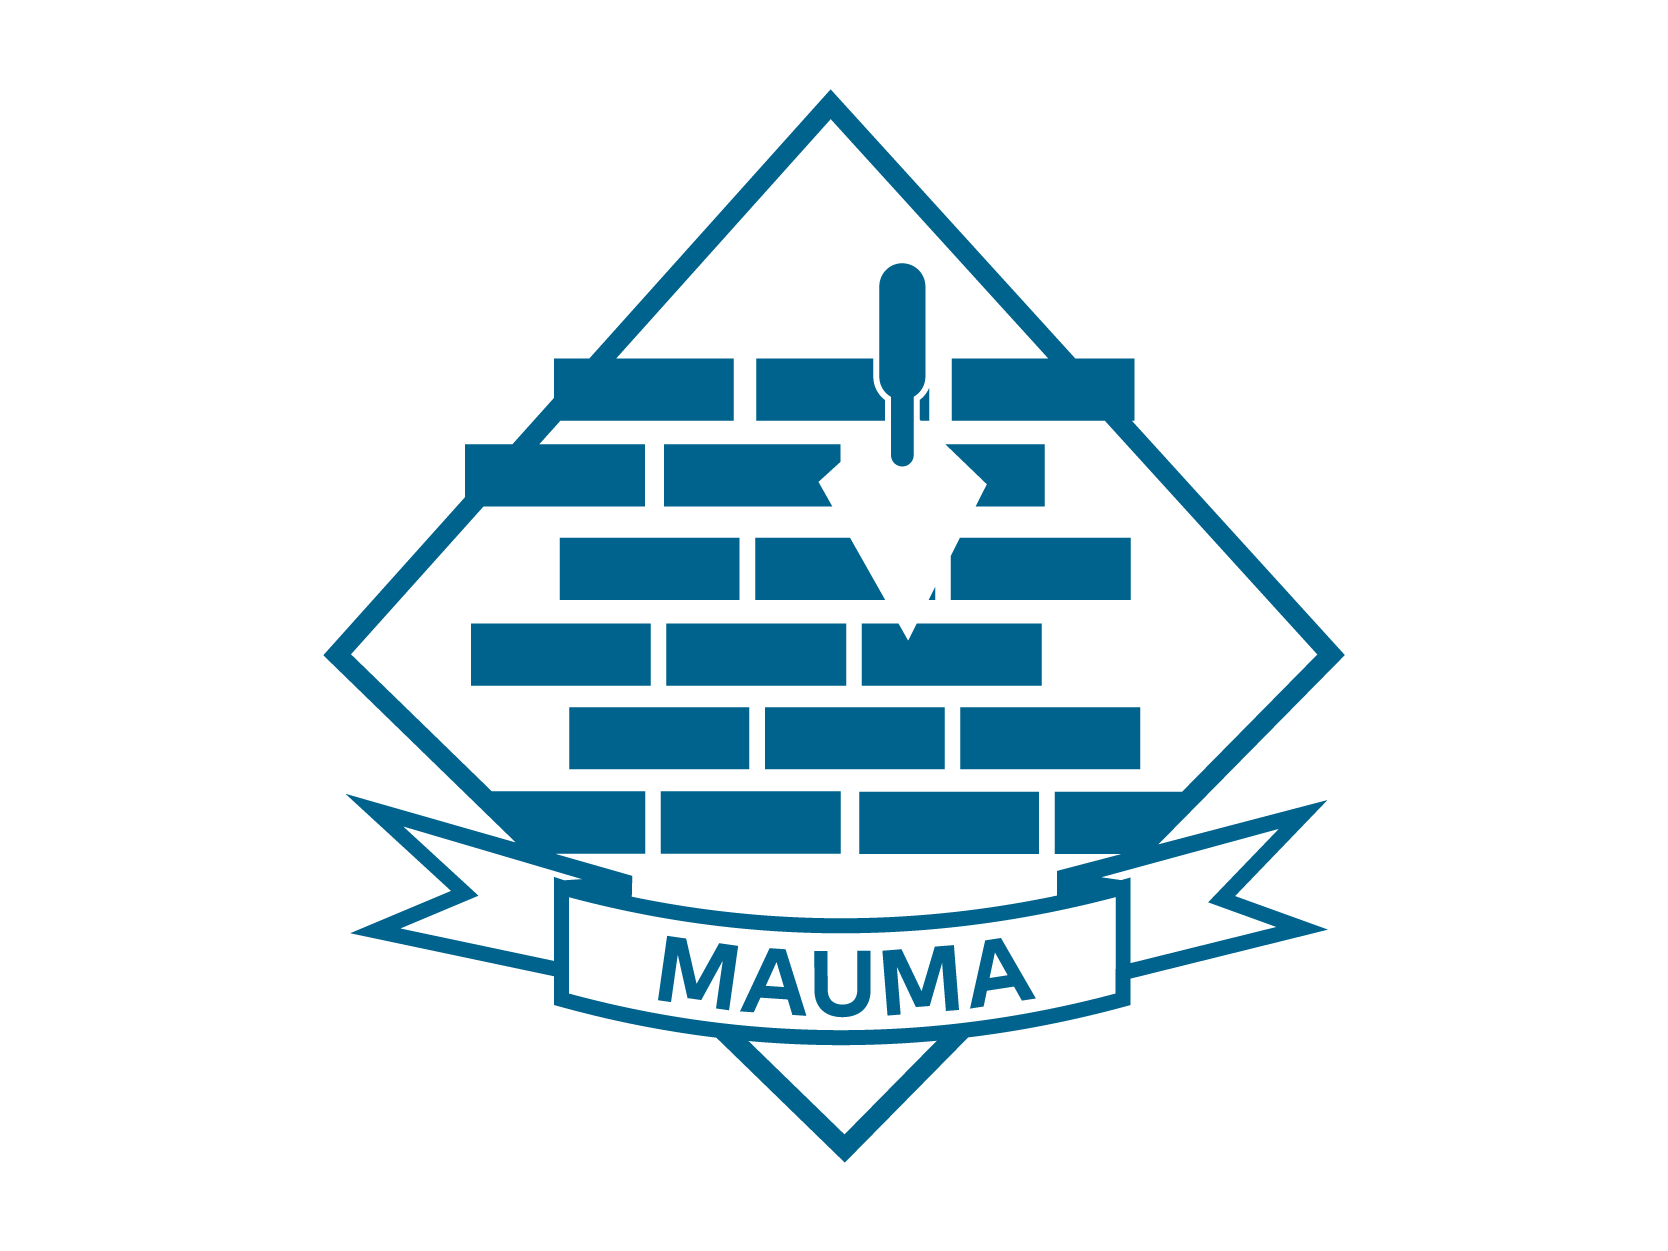 Mauma-01